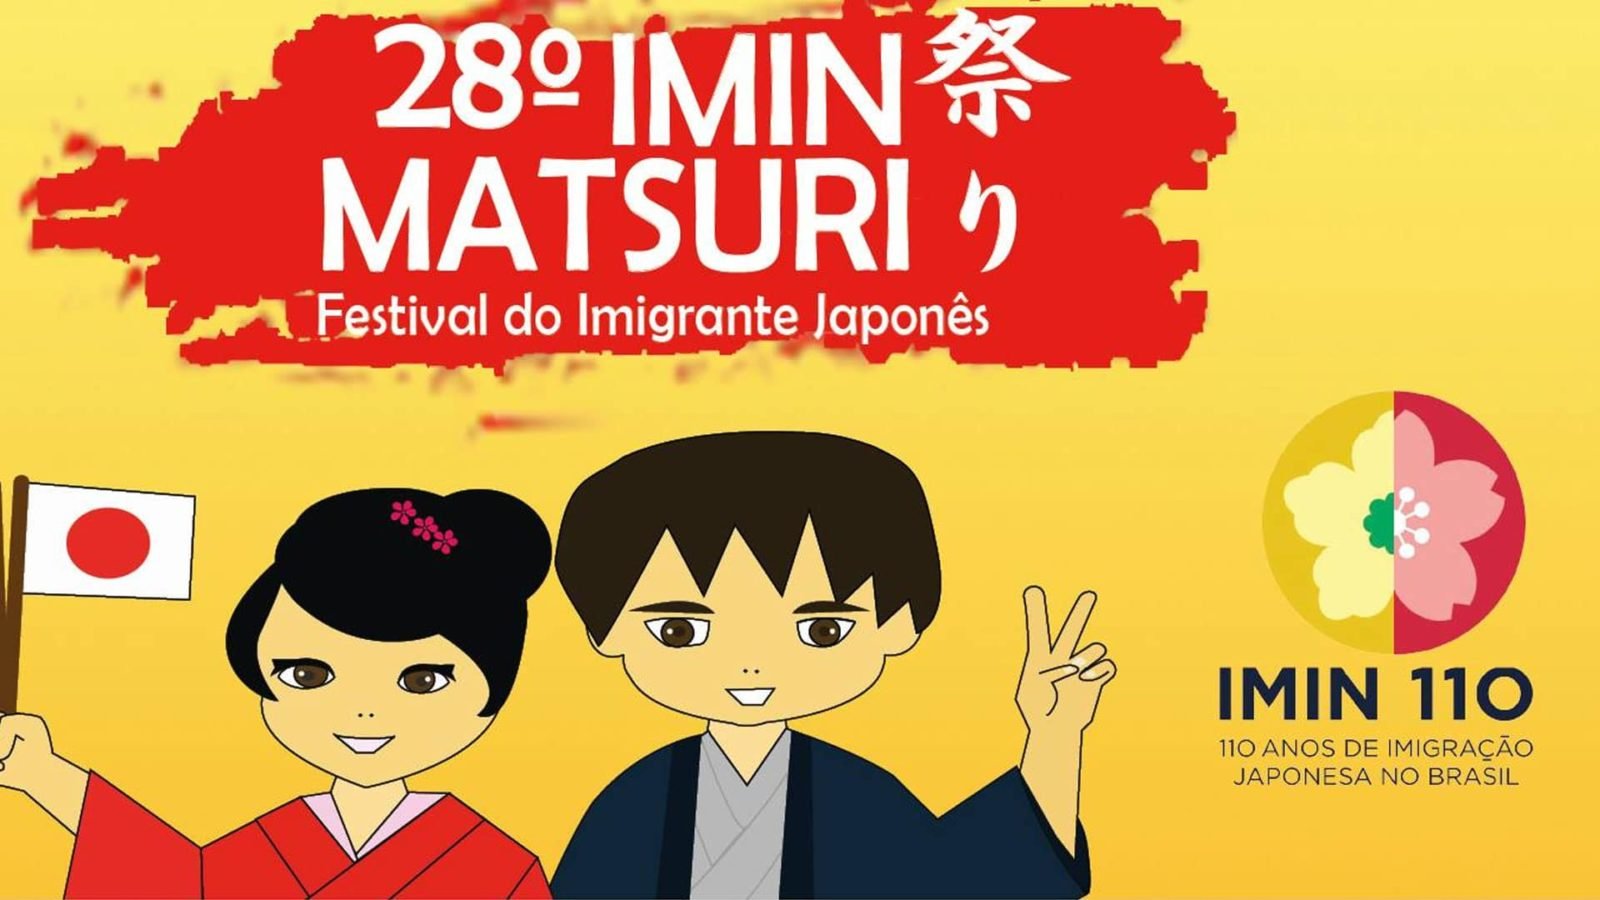 Imin Matsuri 2018 - comemorando 110 anos de imigração japonesa no Brasil